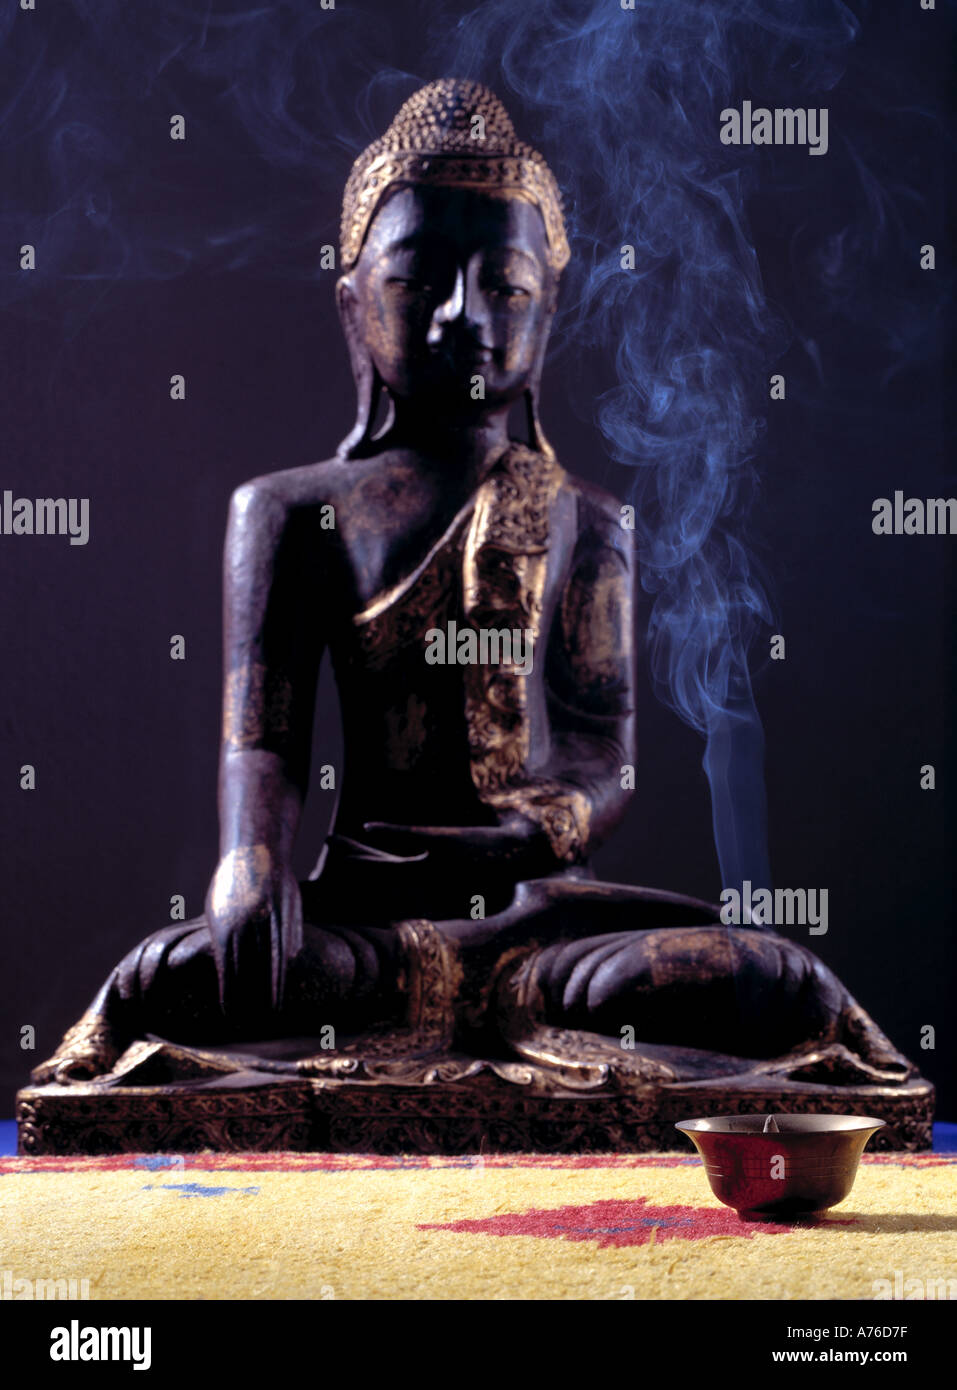 Scultura in legno di Buddha nella parte anteriore del fumo di incenso Foto Stock